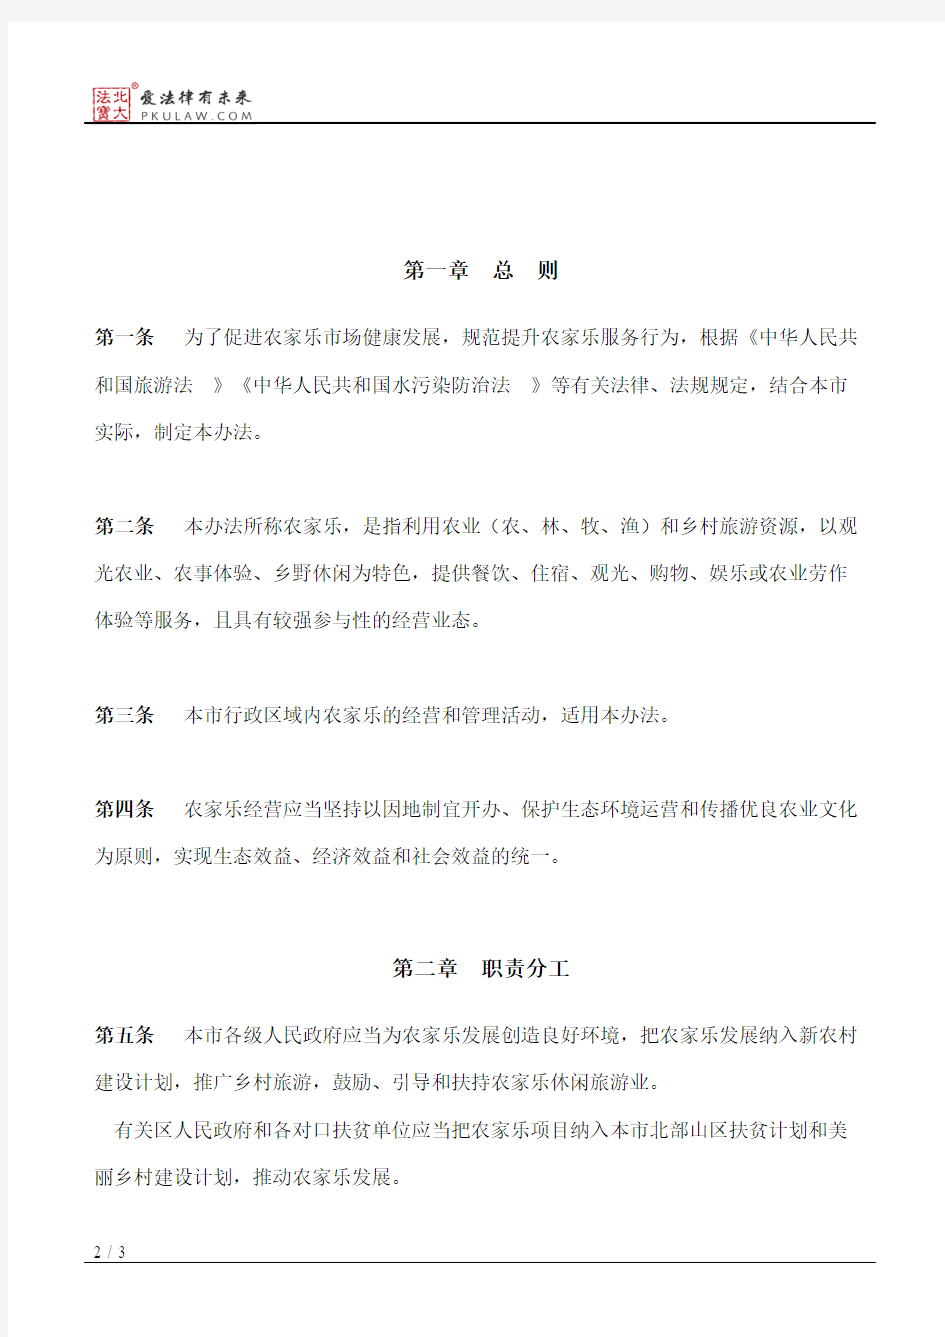 广州市人民政府办公厅关于印发广州市农家乐管理办法的通知(2018)